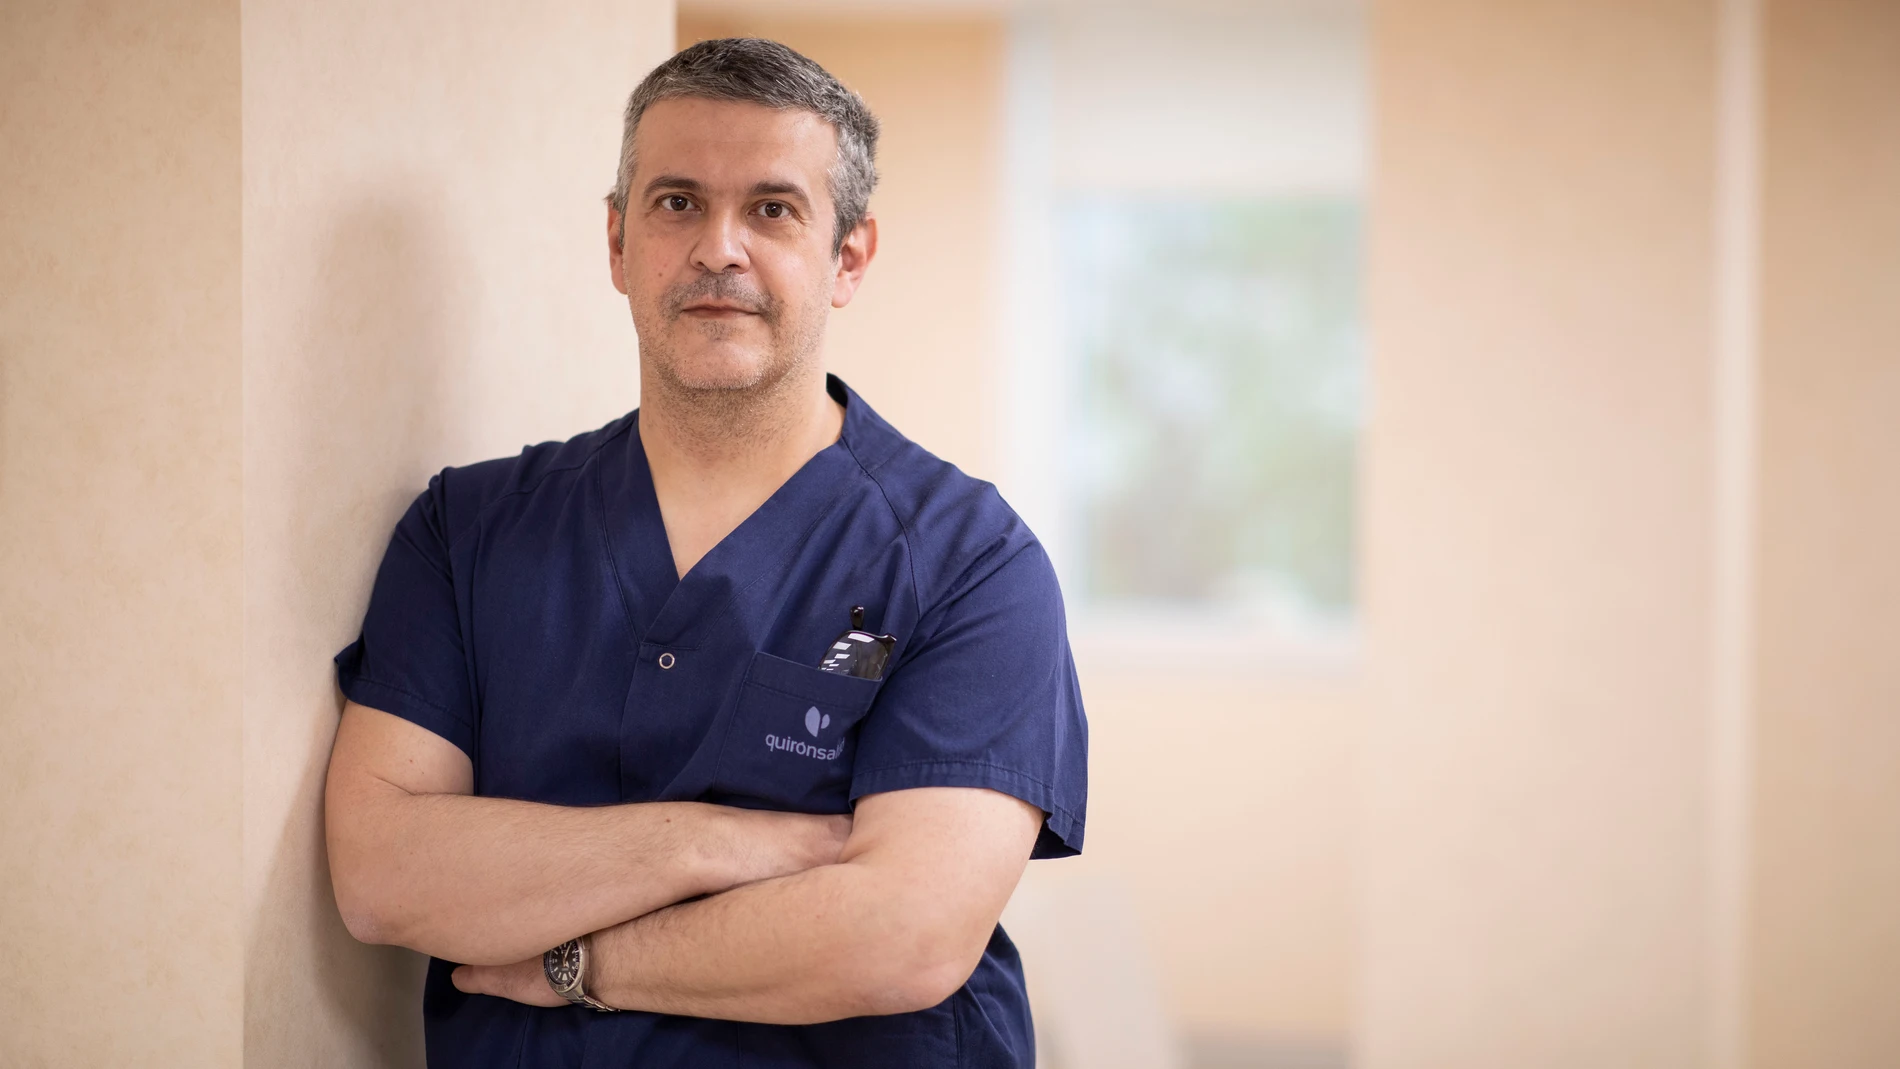 Néstor Montesdeoca es jefe asociado del Servicio de Cirugía Oral, Maxilofacial e Implantología del Hospital La Luz de Madrid